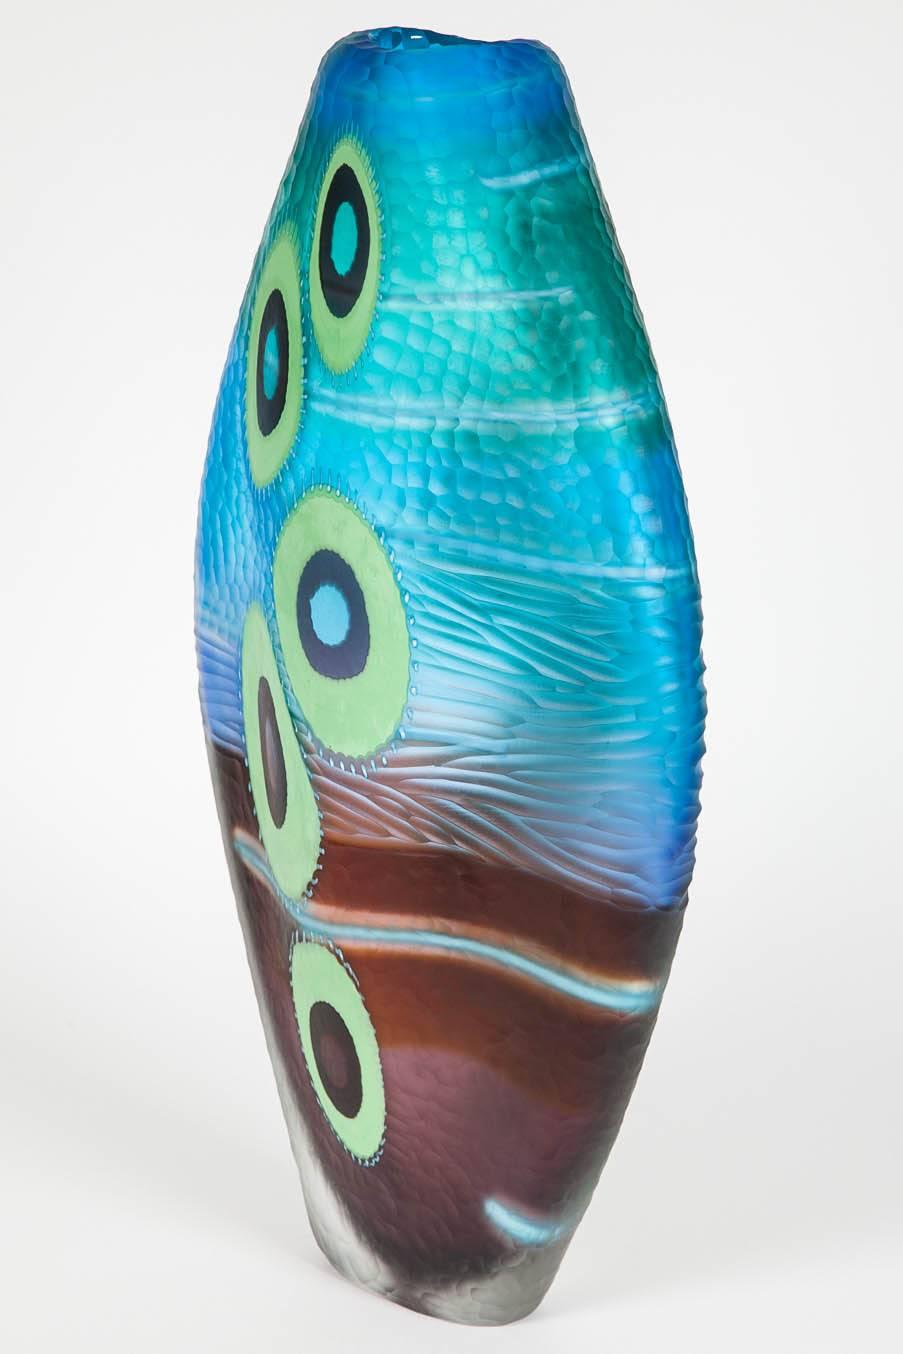 Modern Evviva III, a mixed coloured sculptural glass vase by Marco & Mattia Salvadore